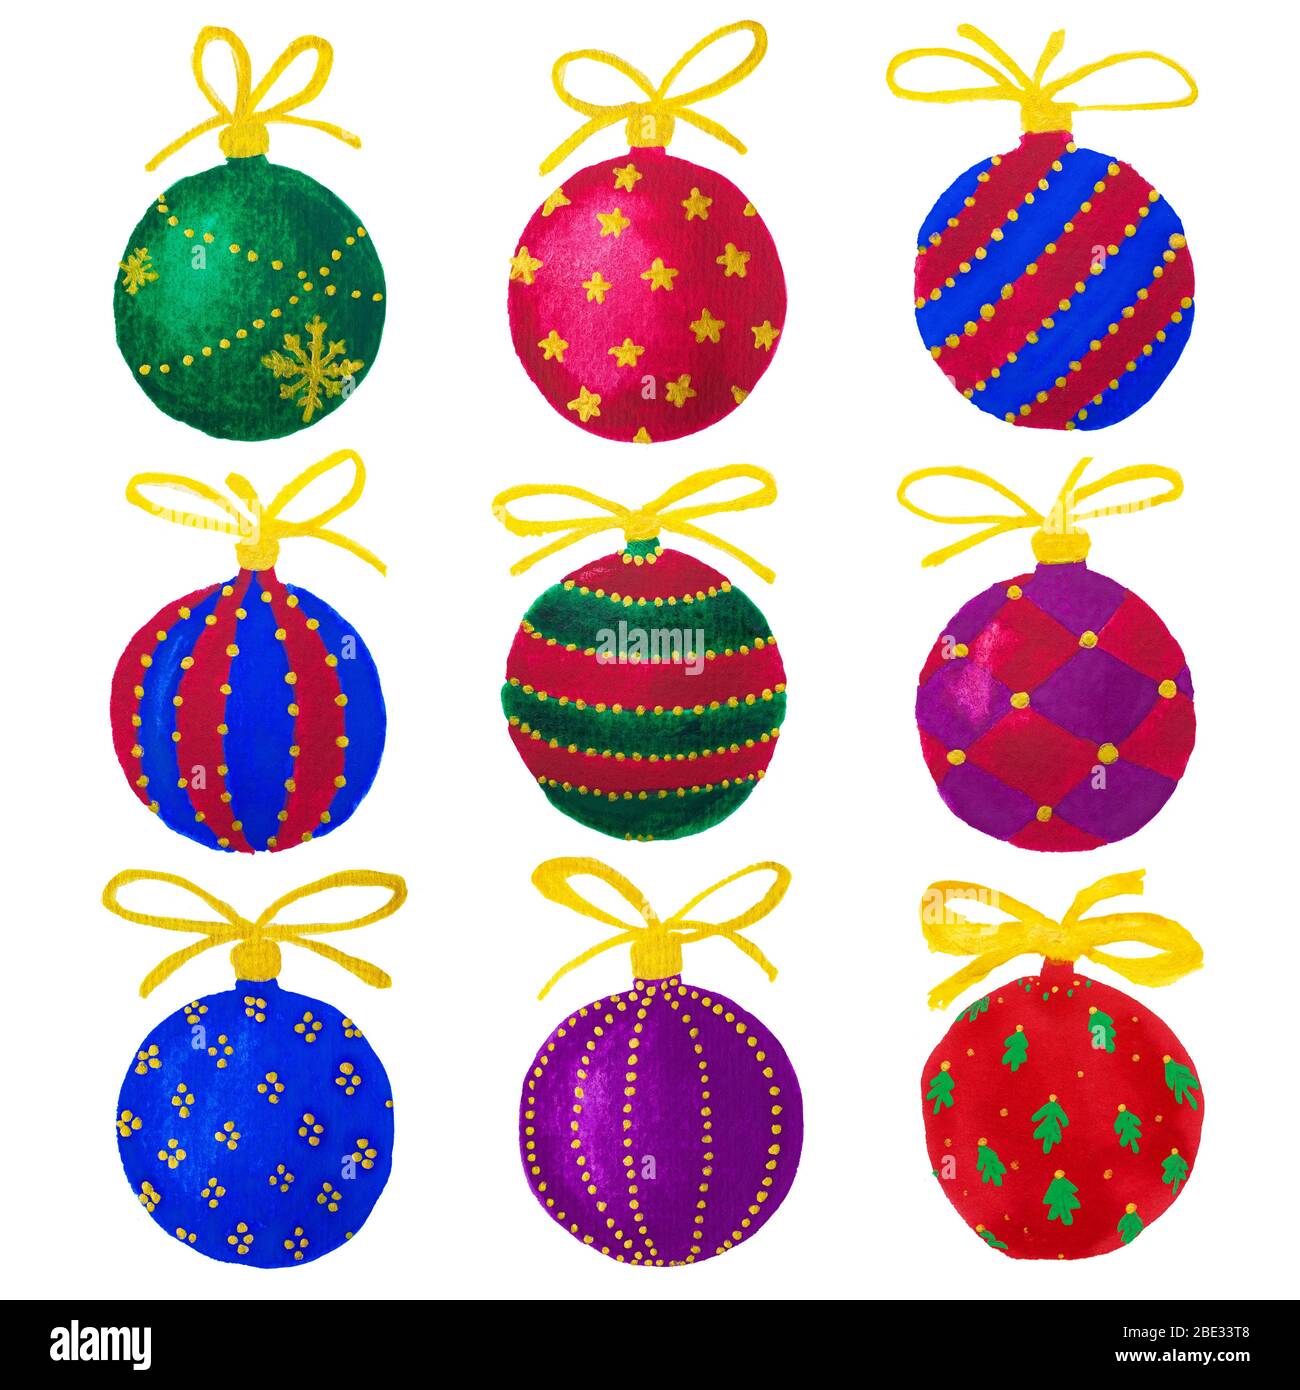 Acuarela dibujo dibujado a mano de coloridas bolas de Navidad bolas juego colección, aislado Foto de stock